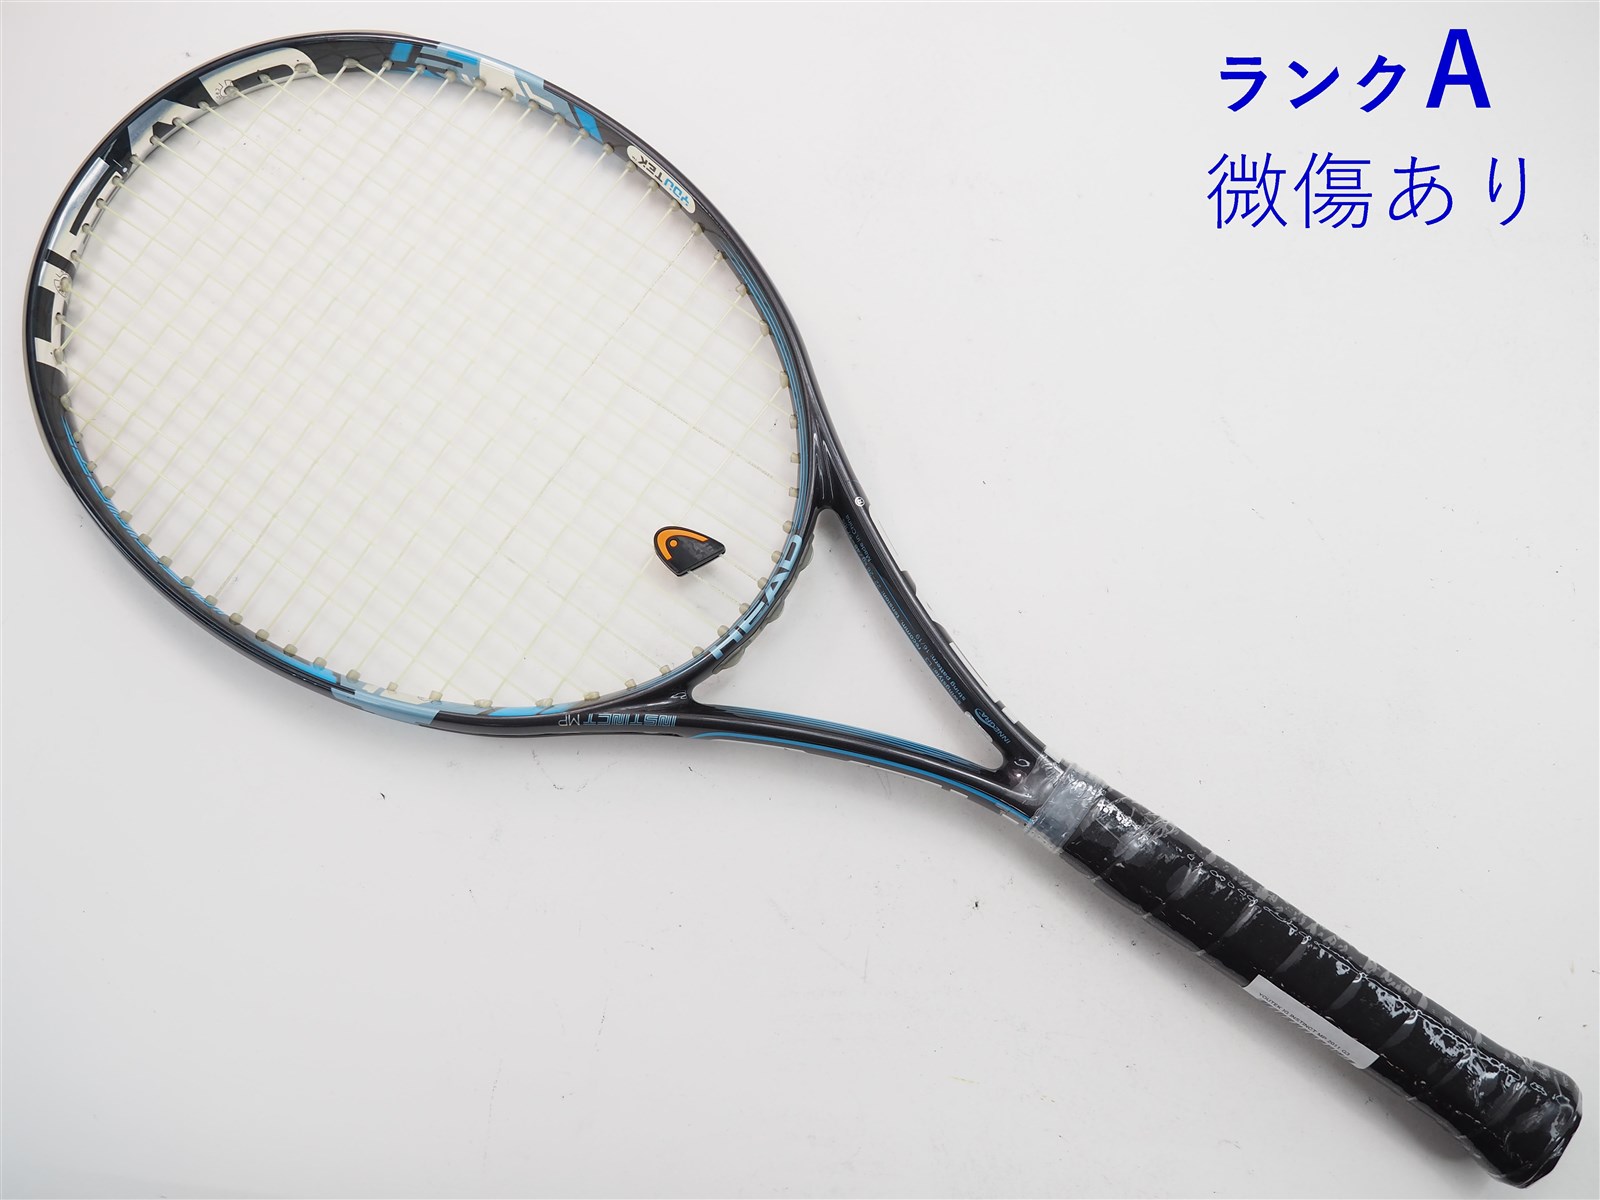 硬式テニスラケット more power 1150s - テニス